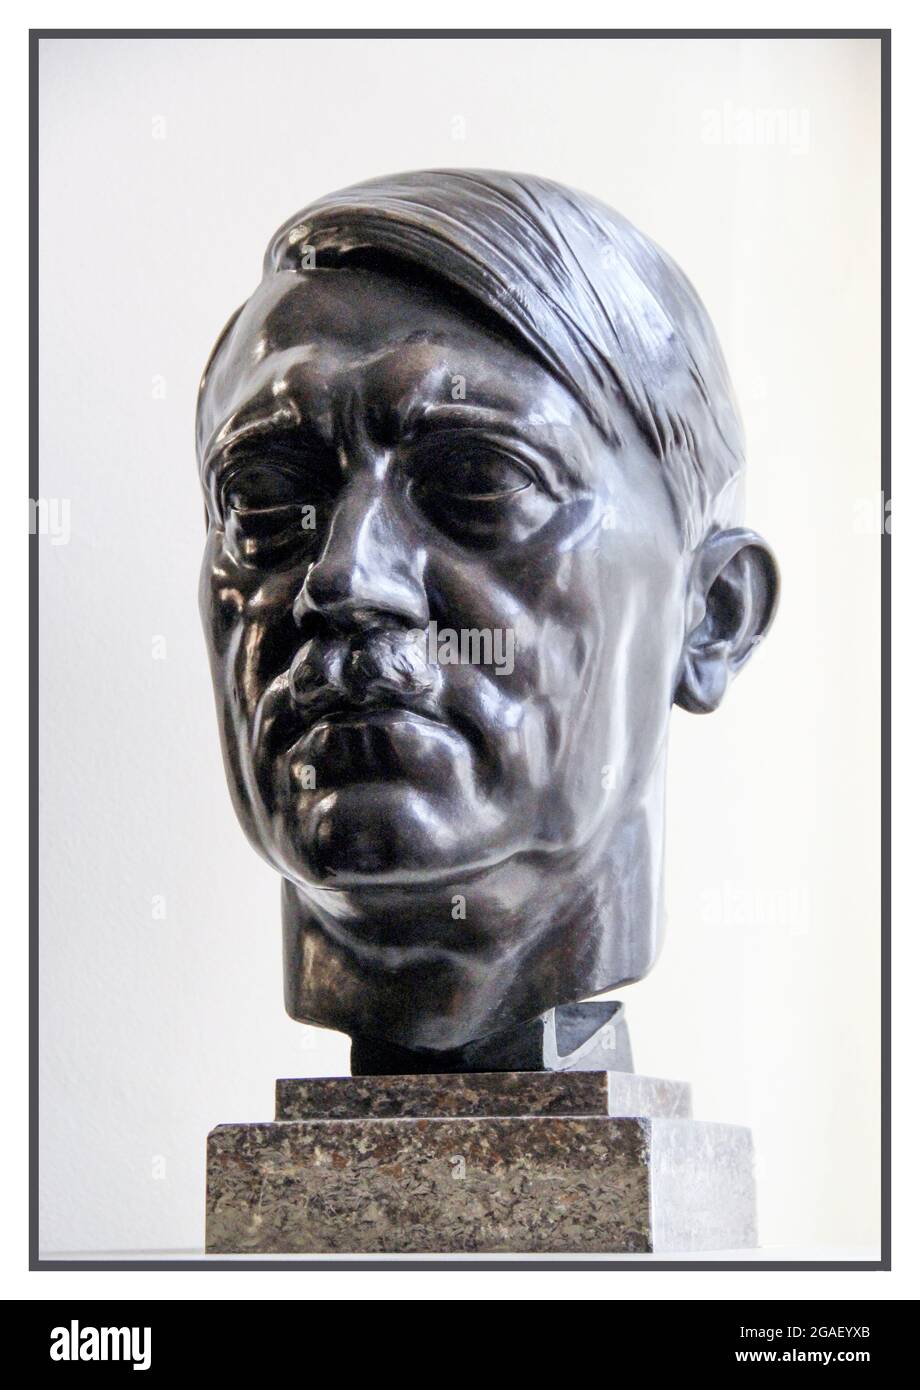 ADOLF HITLER Bronze buste Sculpture portrait buste d'Adolf Hitler, capturé après la Seconde Guerre mondiale . L'un des nombreux se trouve dans le gouvernement de l'Allemagne nazie et dans les bâtiments officiels Banque D'Images